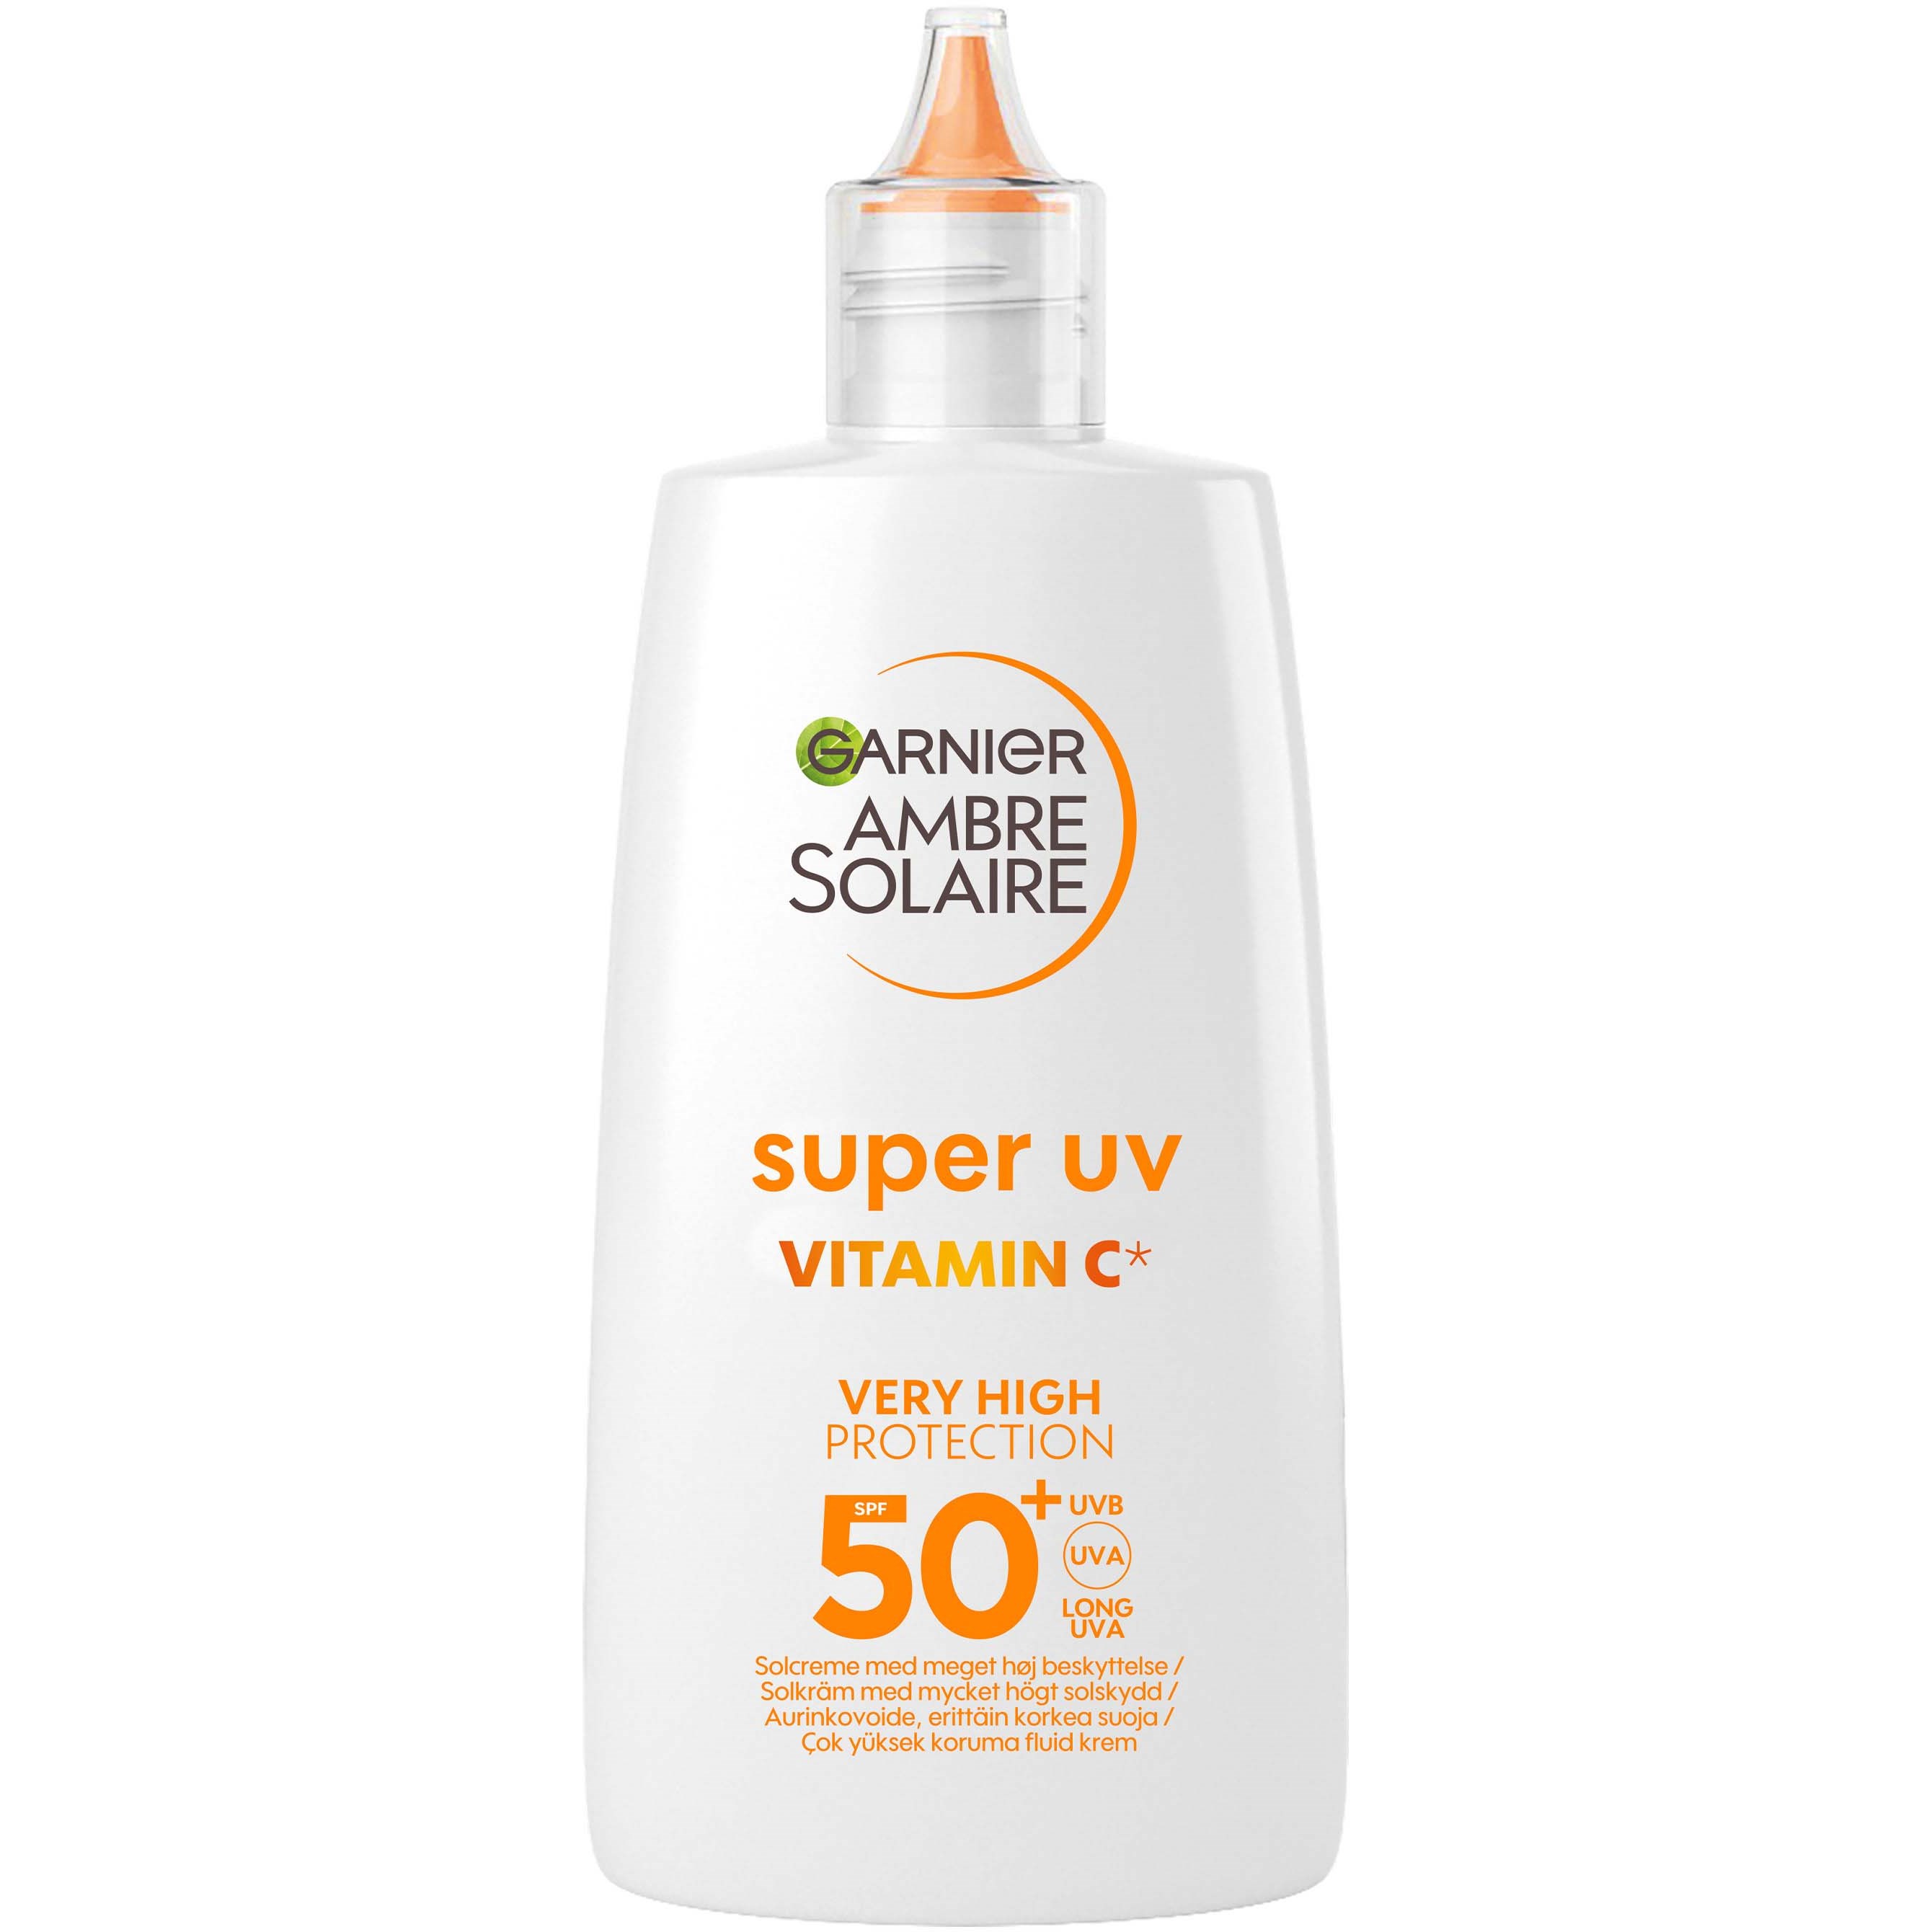 Garnier Ambre Solaire Super UV Vitamin C Very High Protection SPF50+ 4